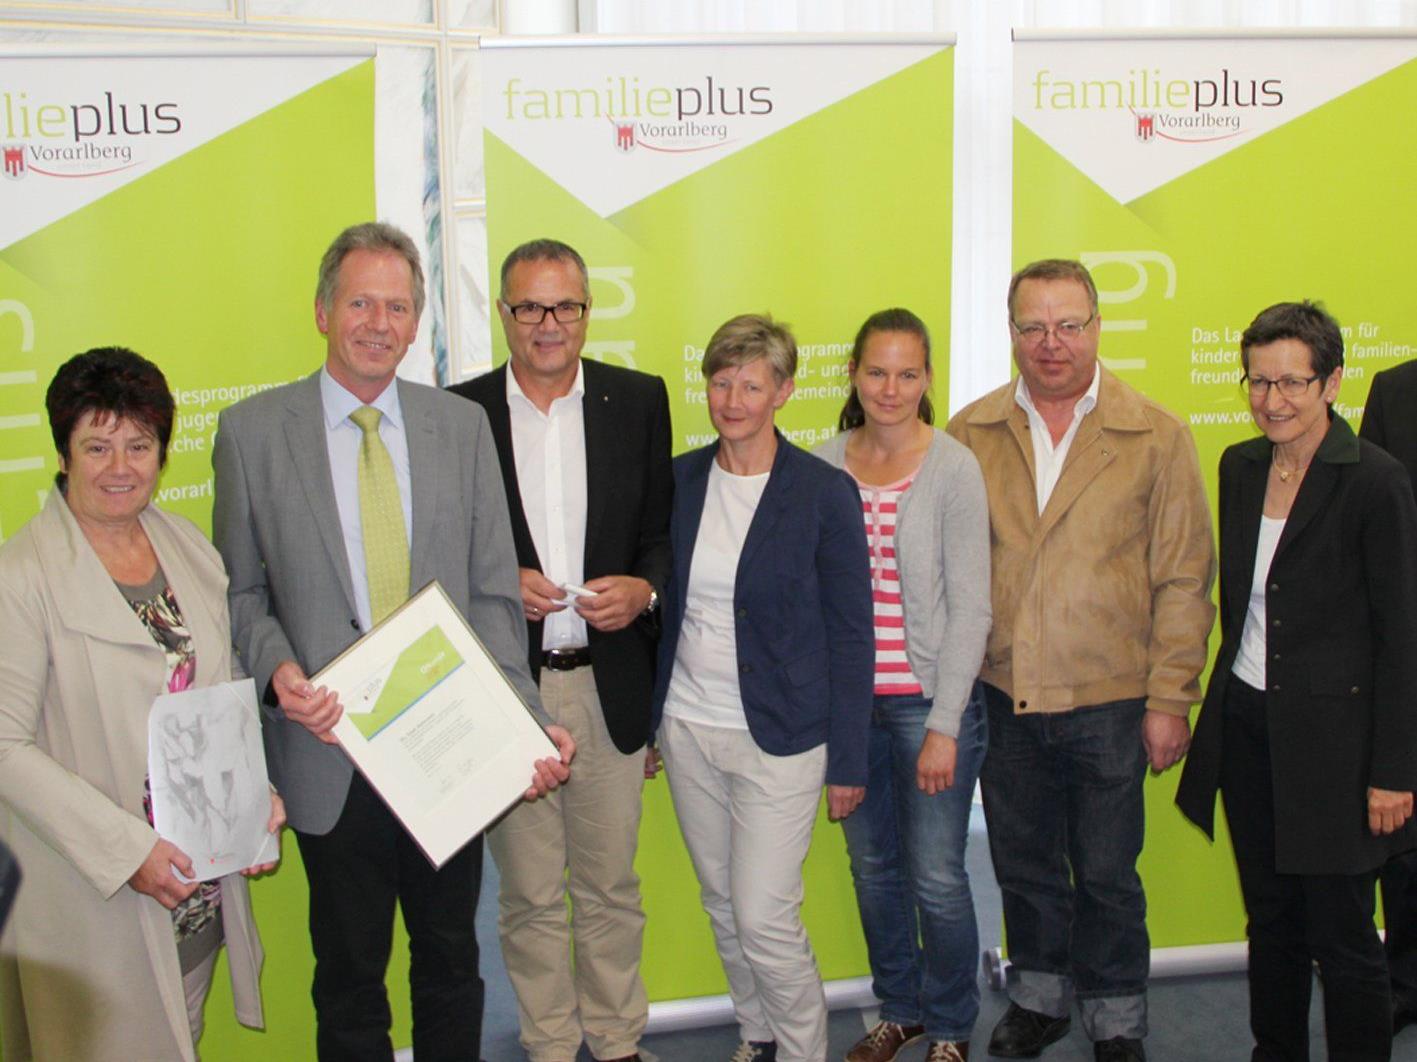 LR Greti Schmid (r.) gartulierte der Hohenemser Delegation zur familieplus-Zertifizierung.